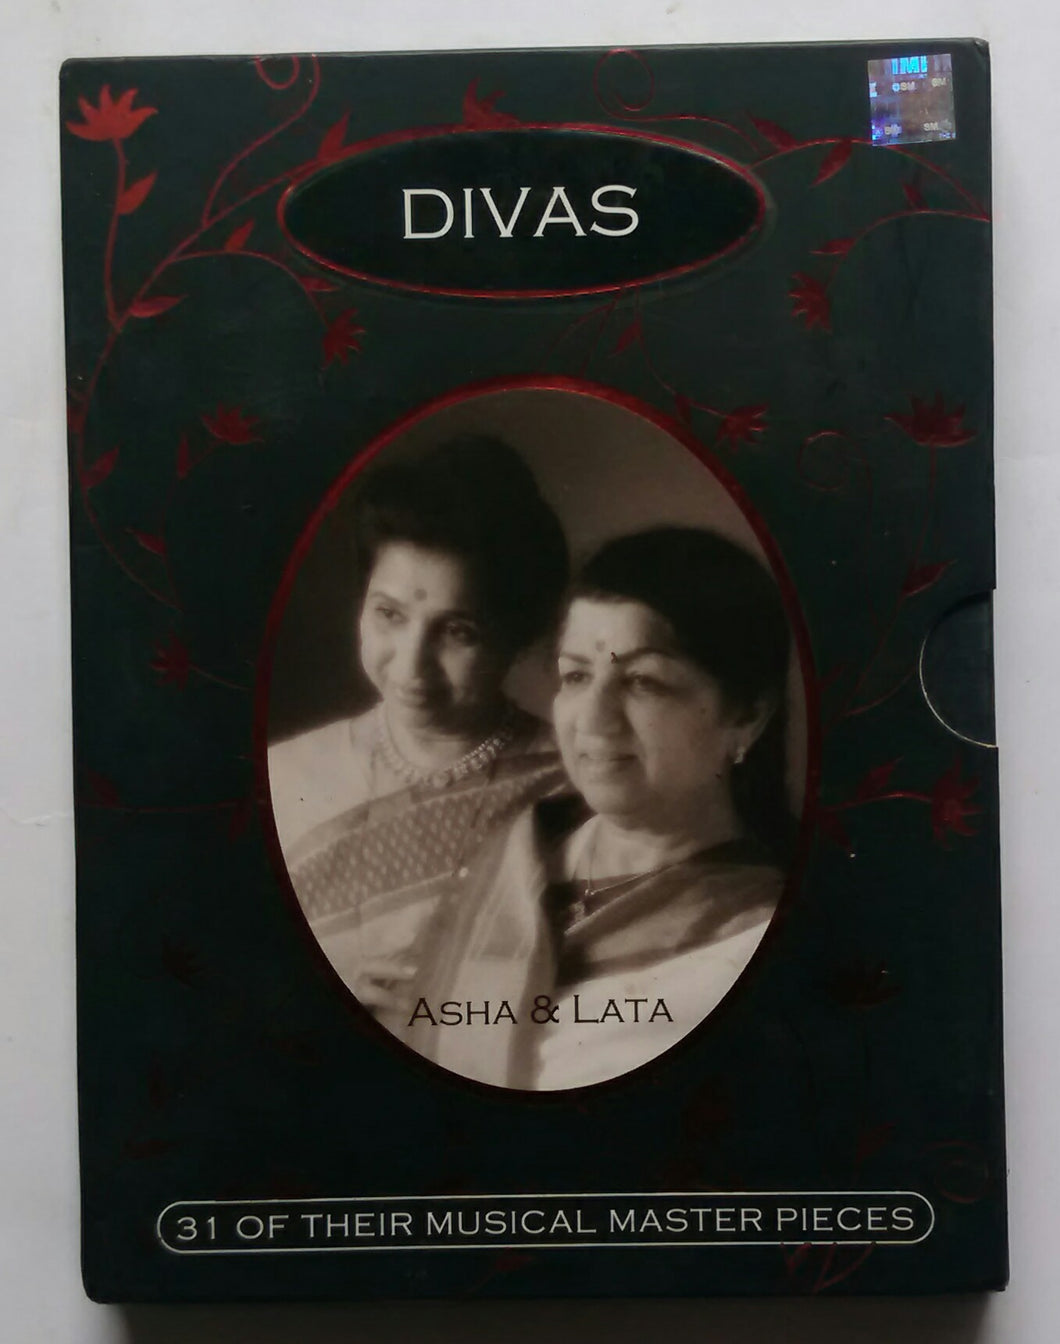 Divas - Asha & Lata 